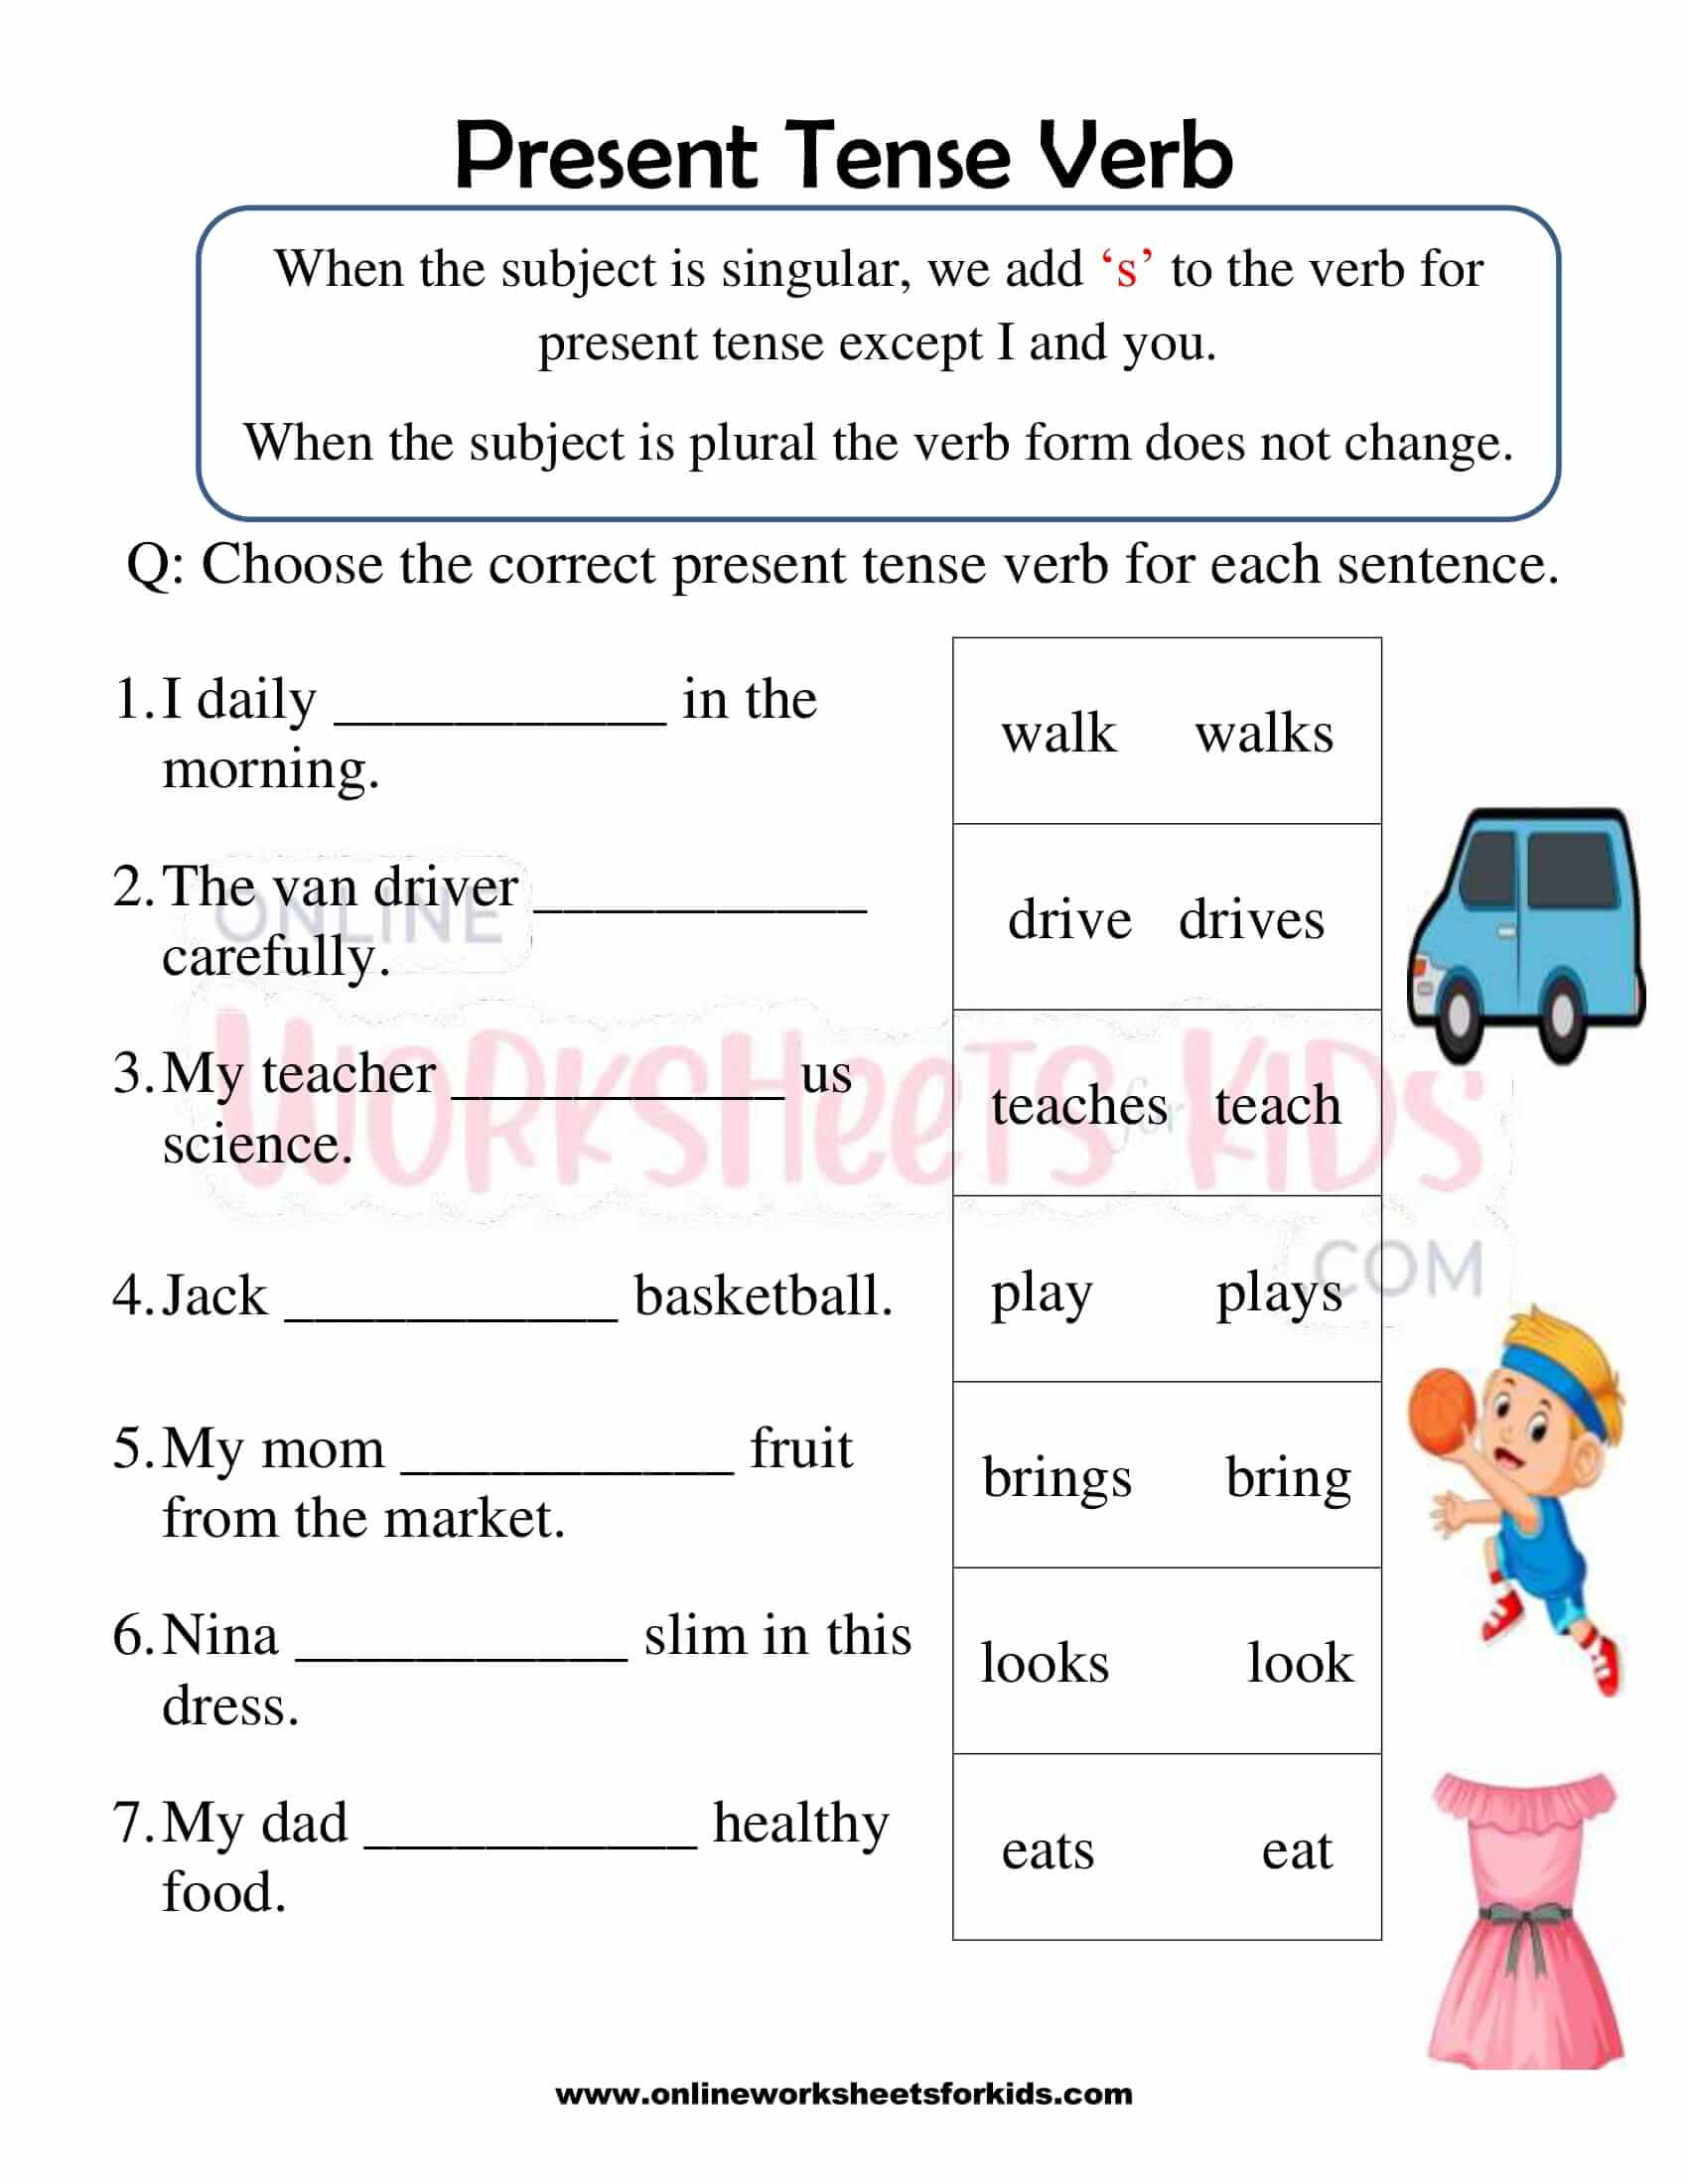 verbs-worksheets-verb-tenses-worksheets